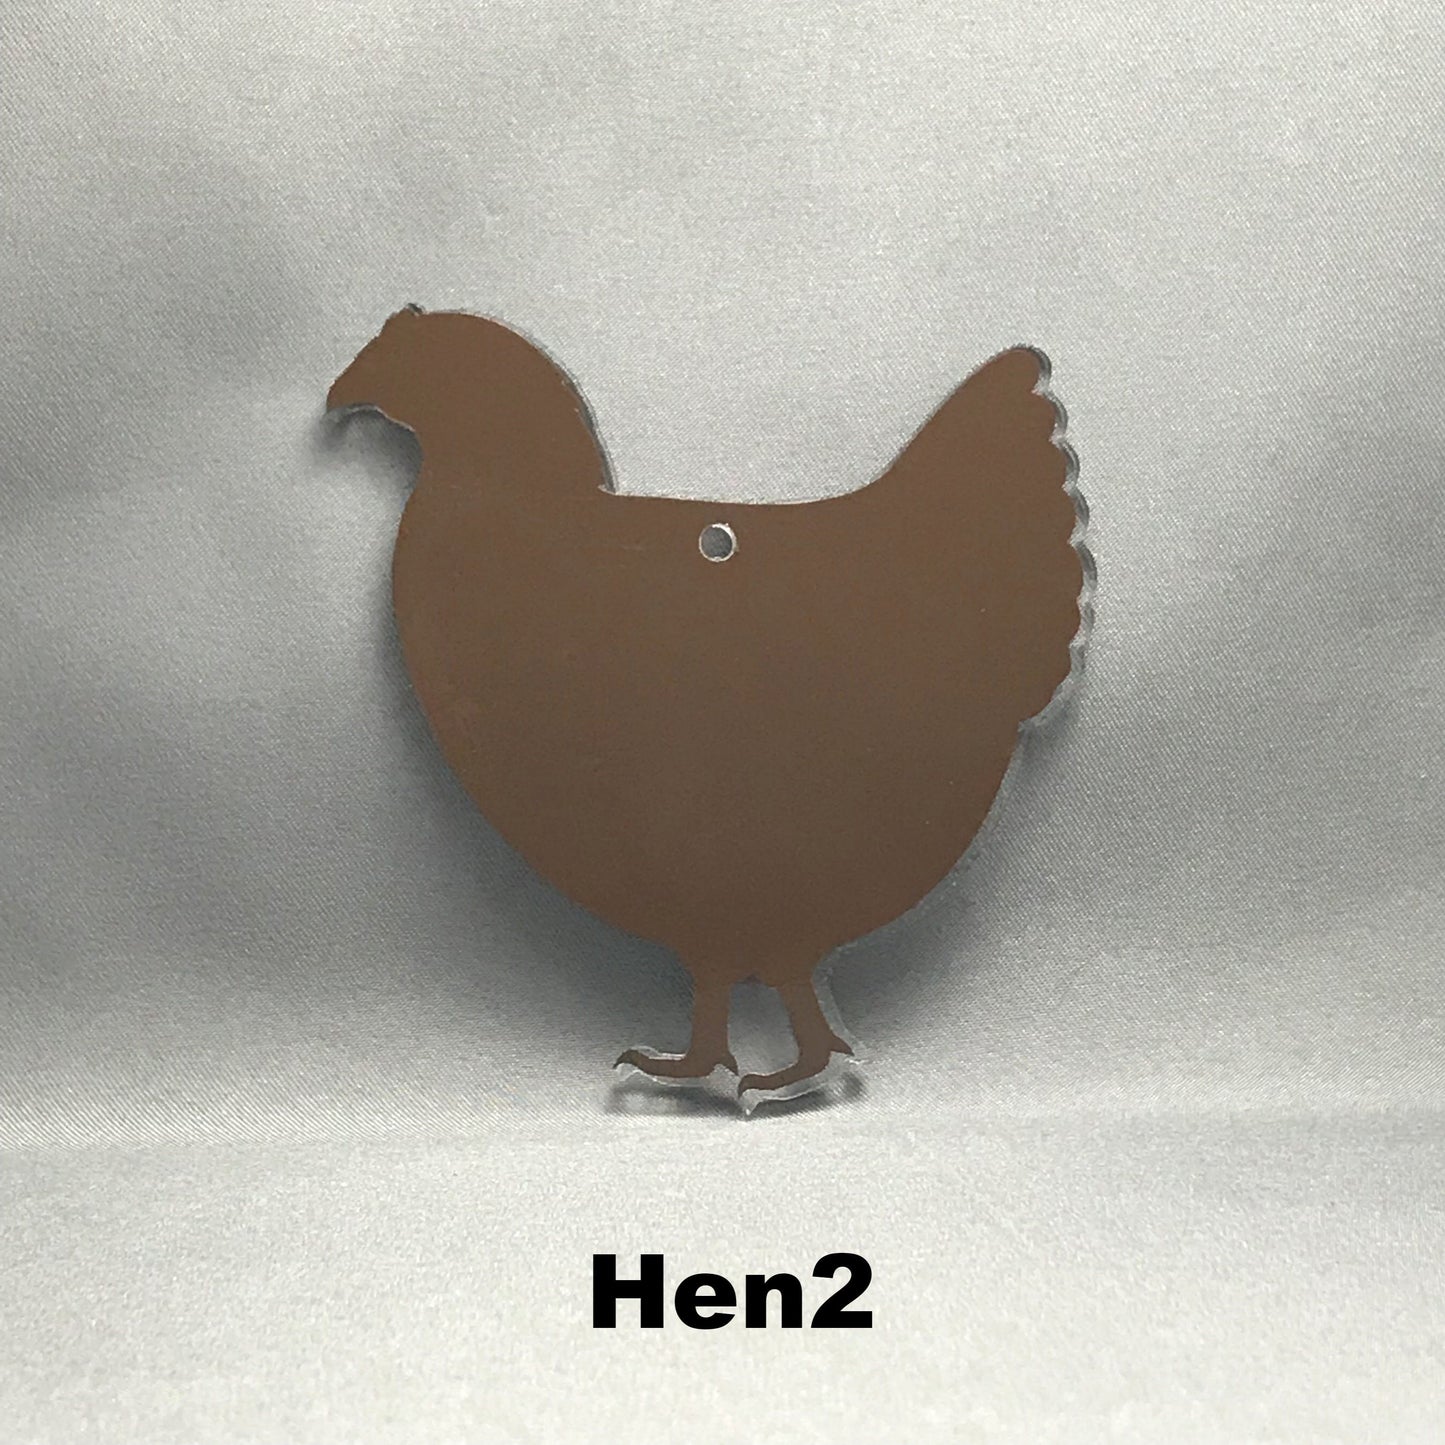 Hen Blank Acrylic Shape - 3 Inch